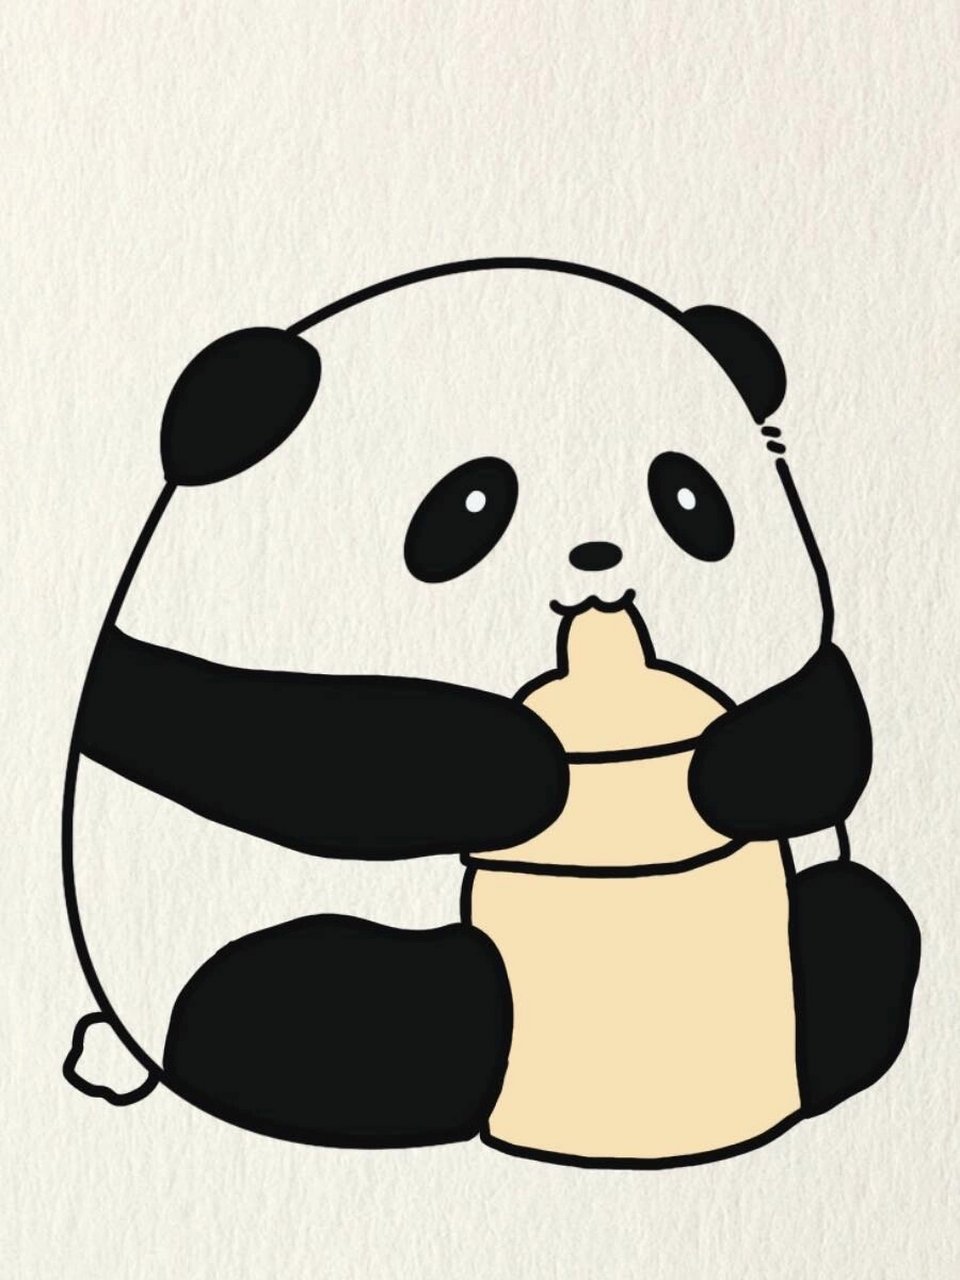 简笔画教程—喝奶的小熊猫 哇哇哇,这个熊猫还喝奶呢,好想养一只